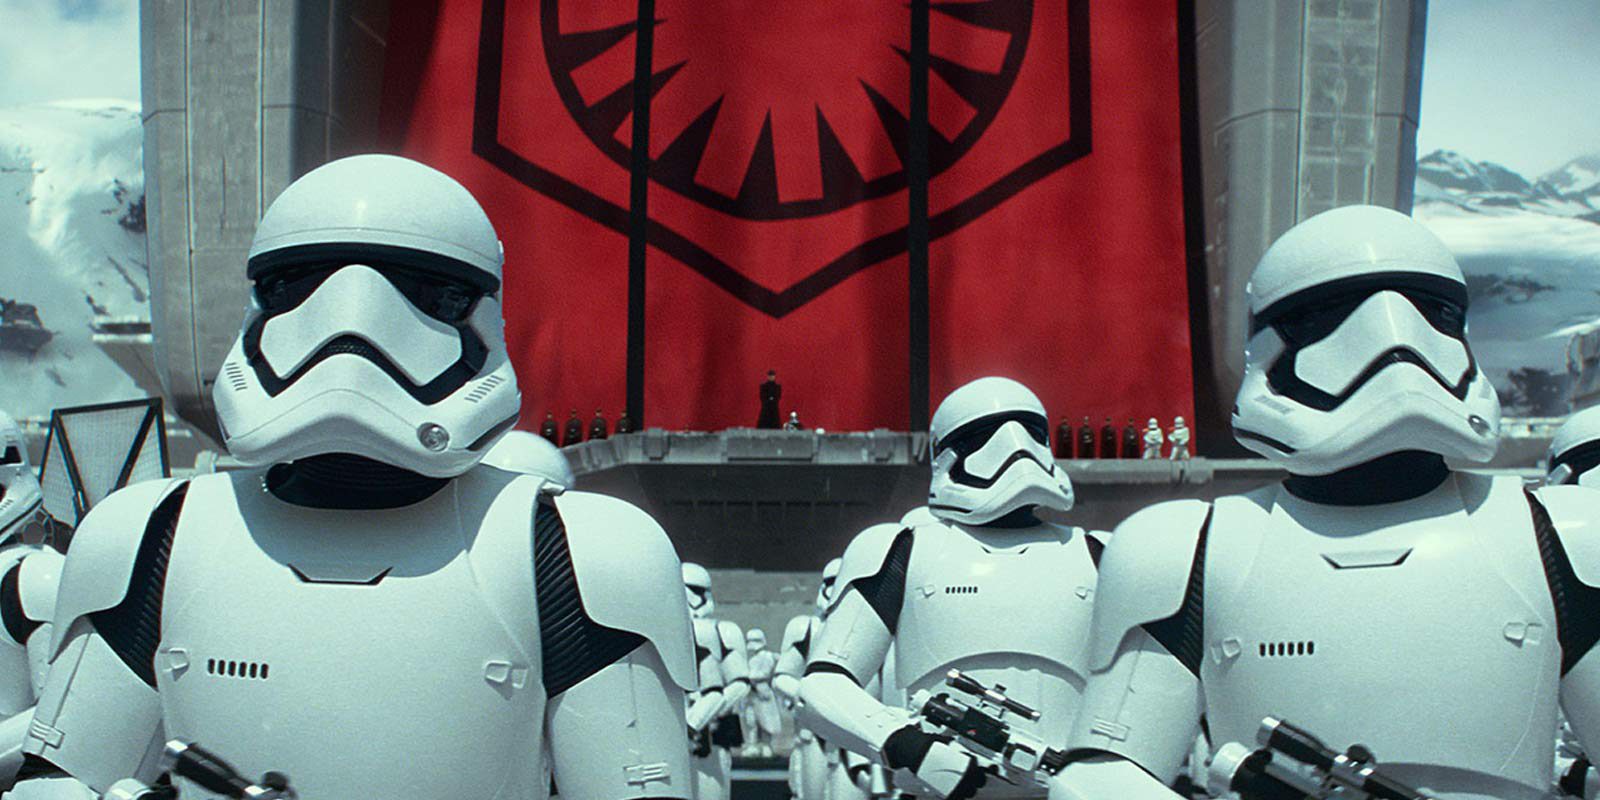 Desvelada La Supremacía, la nave de Snoke en 'Star Wars: Los últimos Jedi'